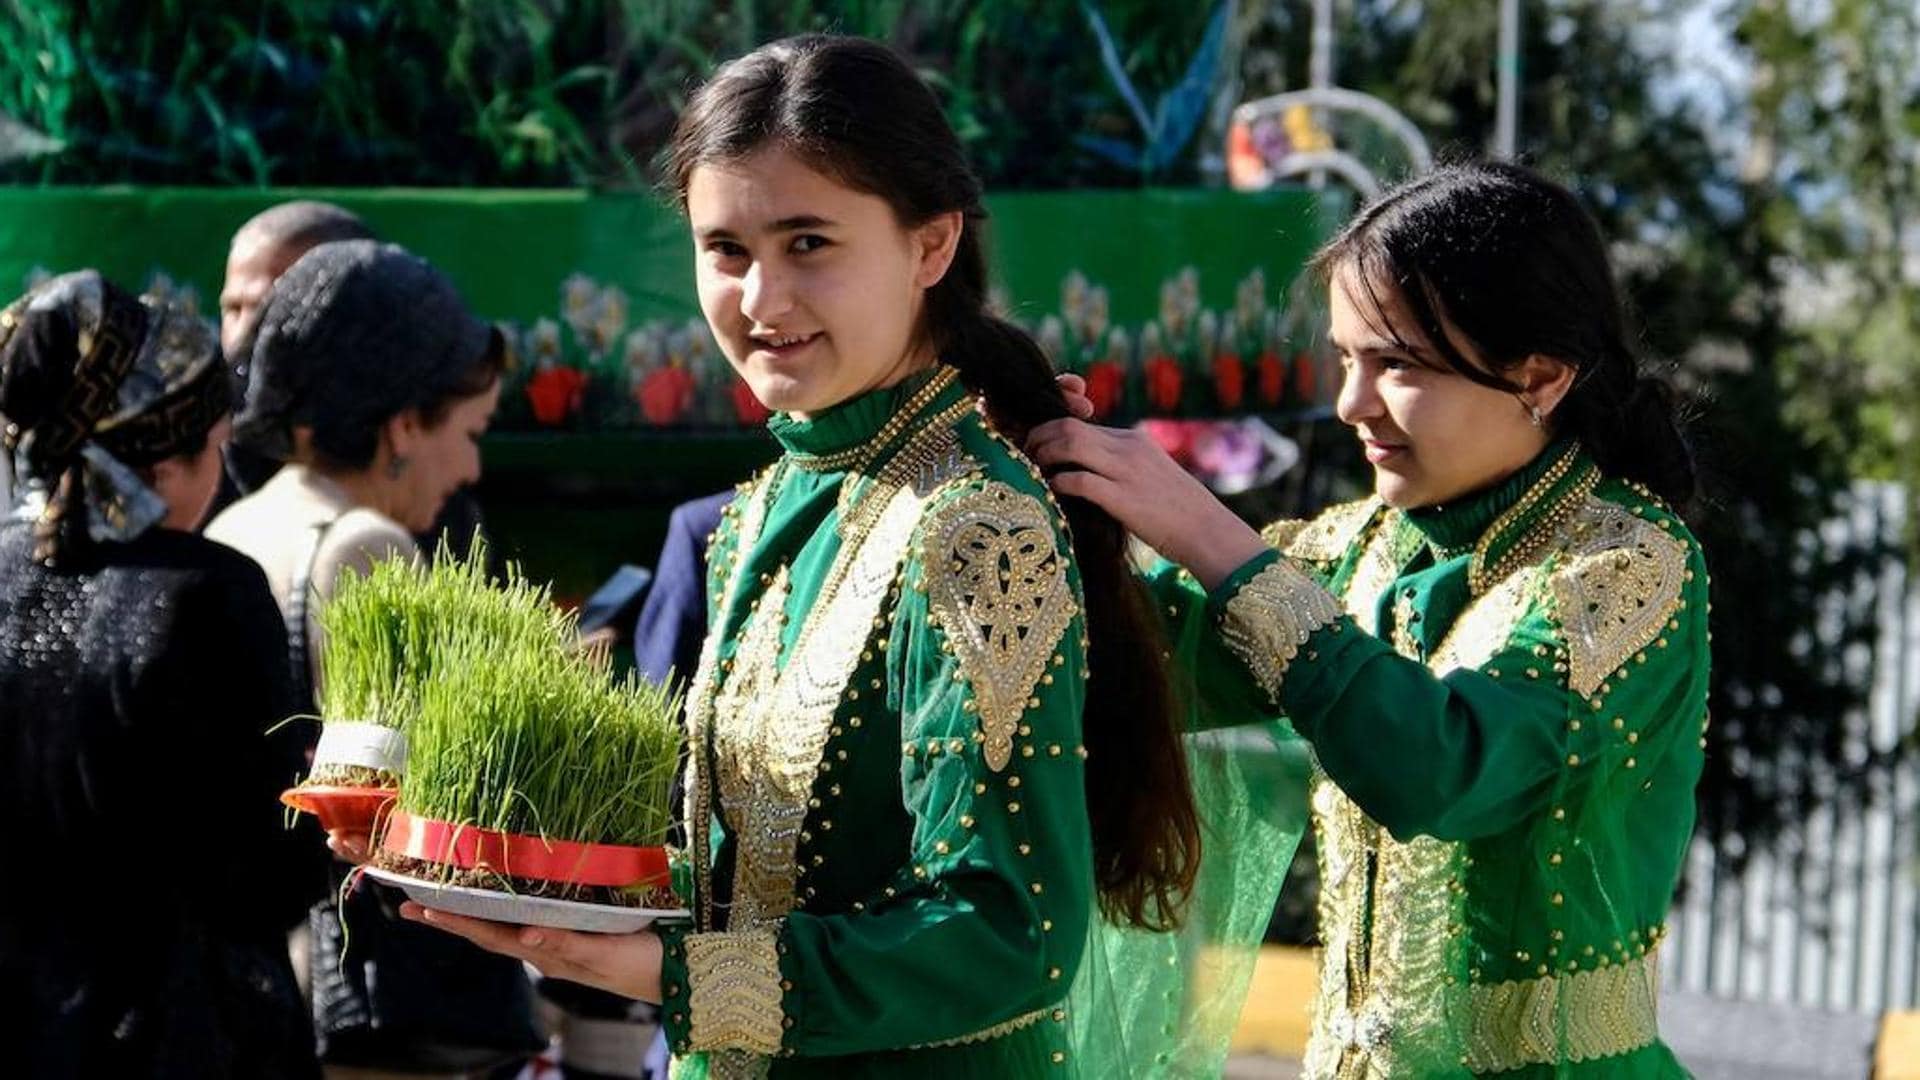 Tadschikistan, die ehemalige Sowjetrepublik, wo Frauen keine Miniröcke tragen sollten